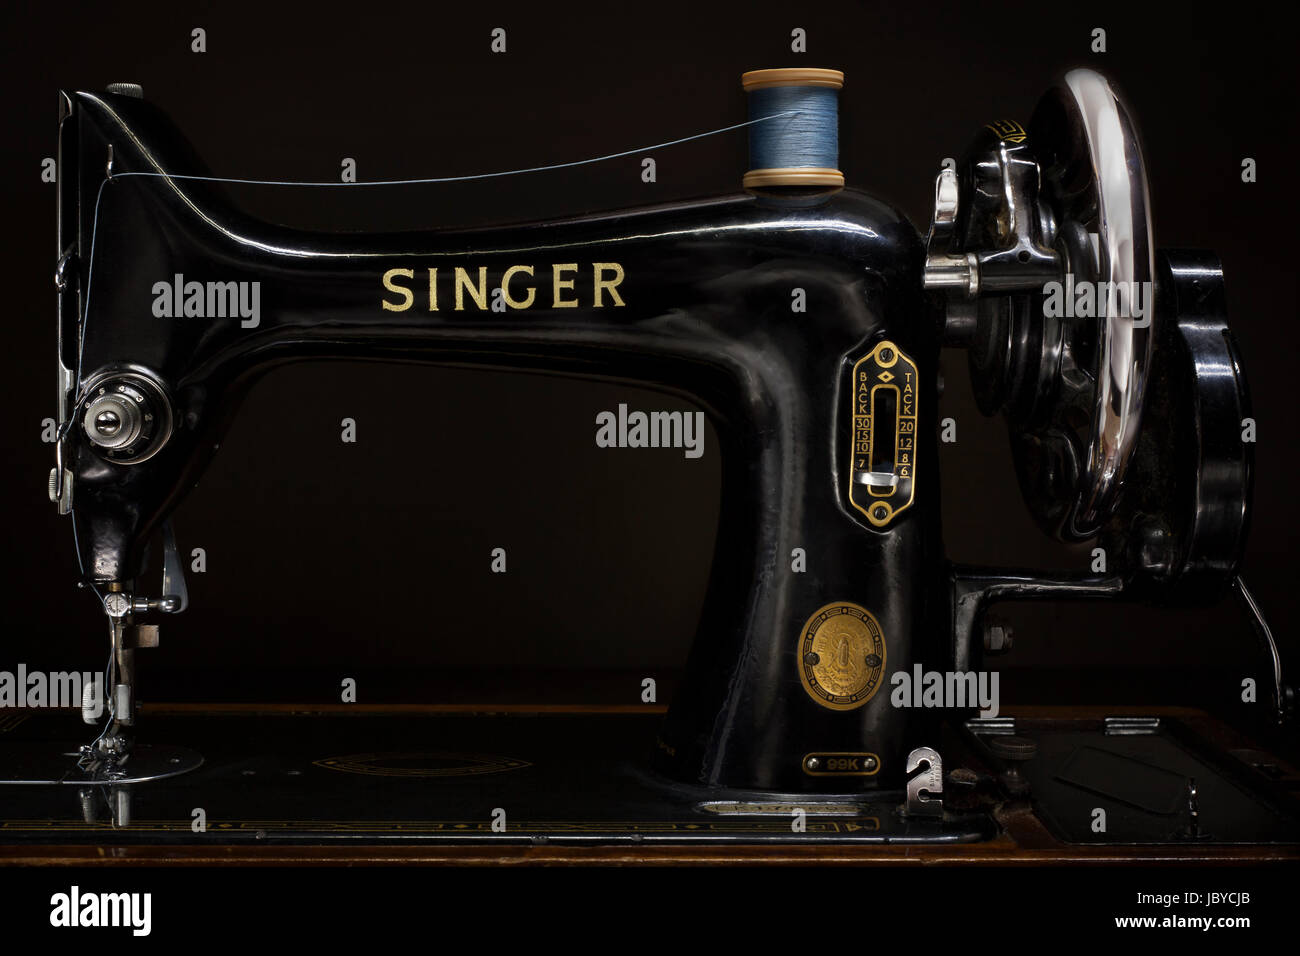 Belle conception du produit depuis le début des années 1900, la machine à coudre  Singer 99K a été introduit en 1911 et est resté en production jusqu'en 1950  Photo Stock - Alamy